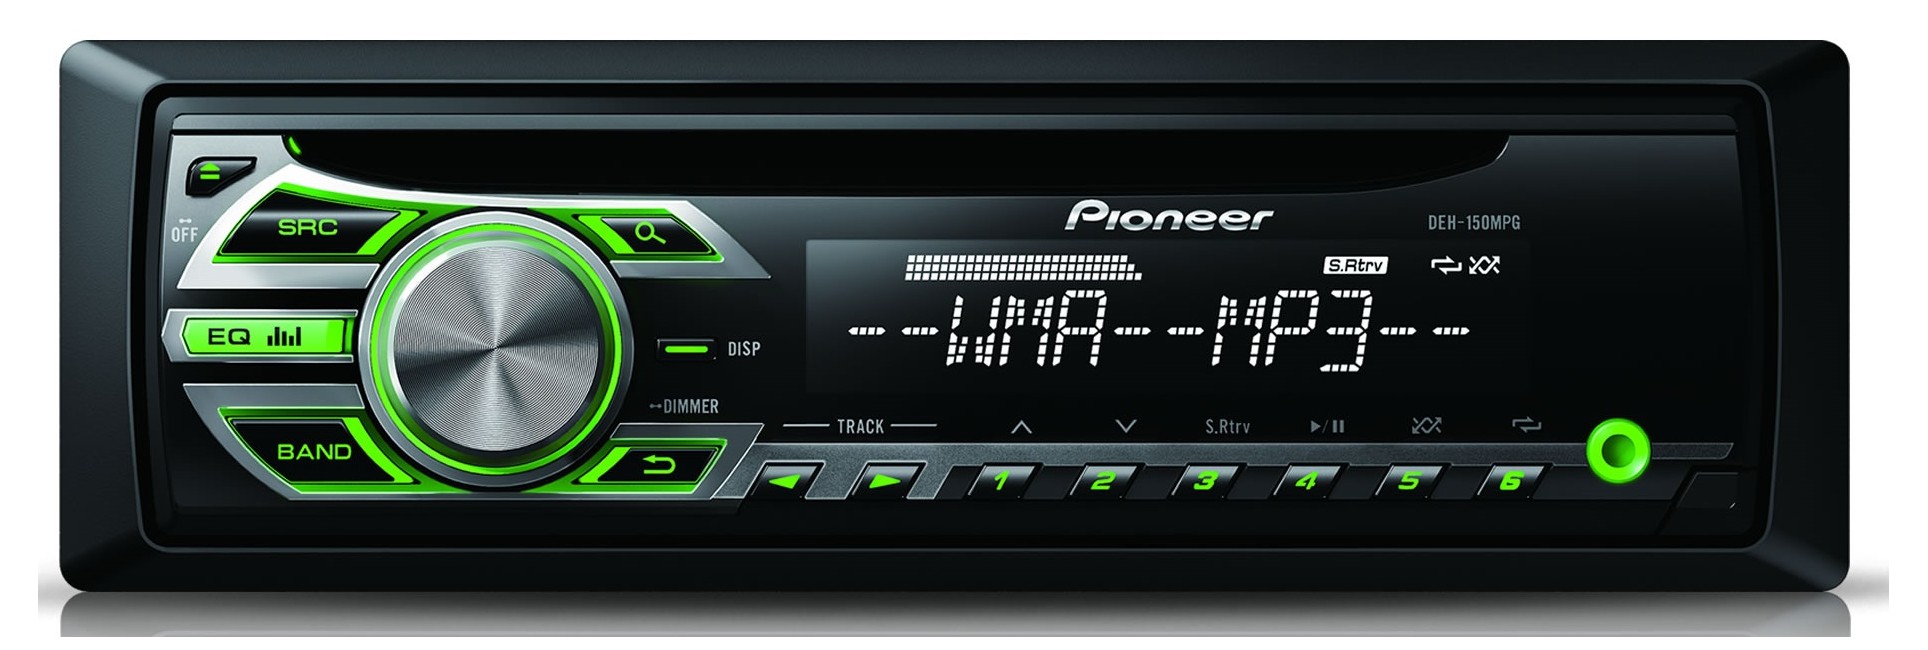 Pioneer DEH-150MPG